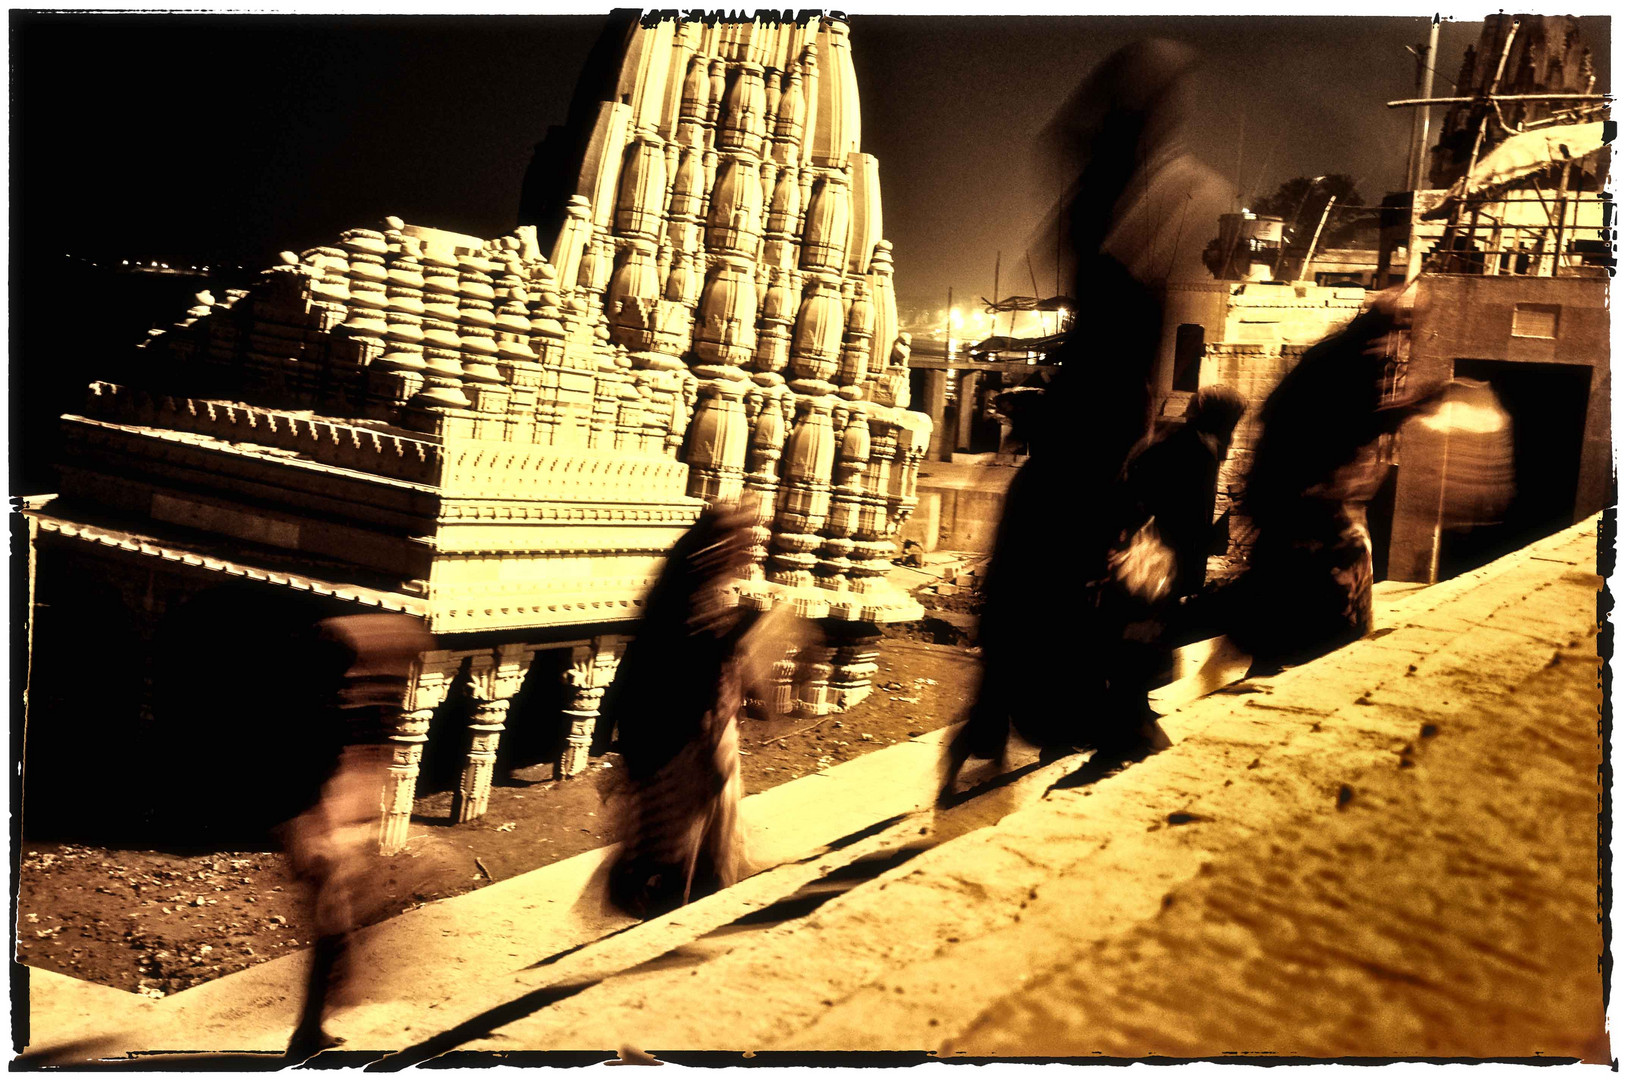 ...walking ghosts in sacred Varanasi